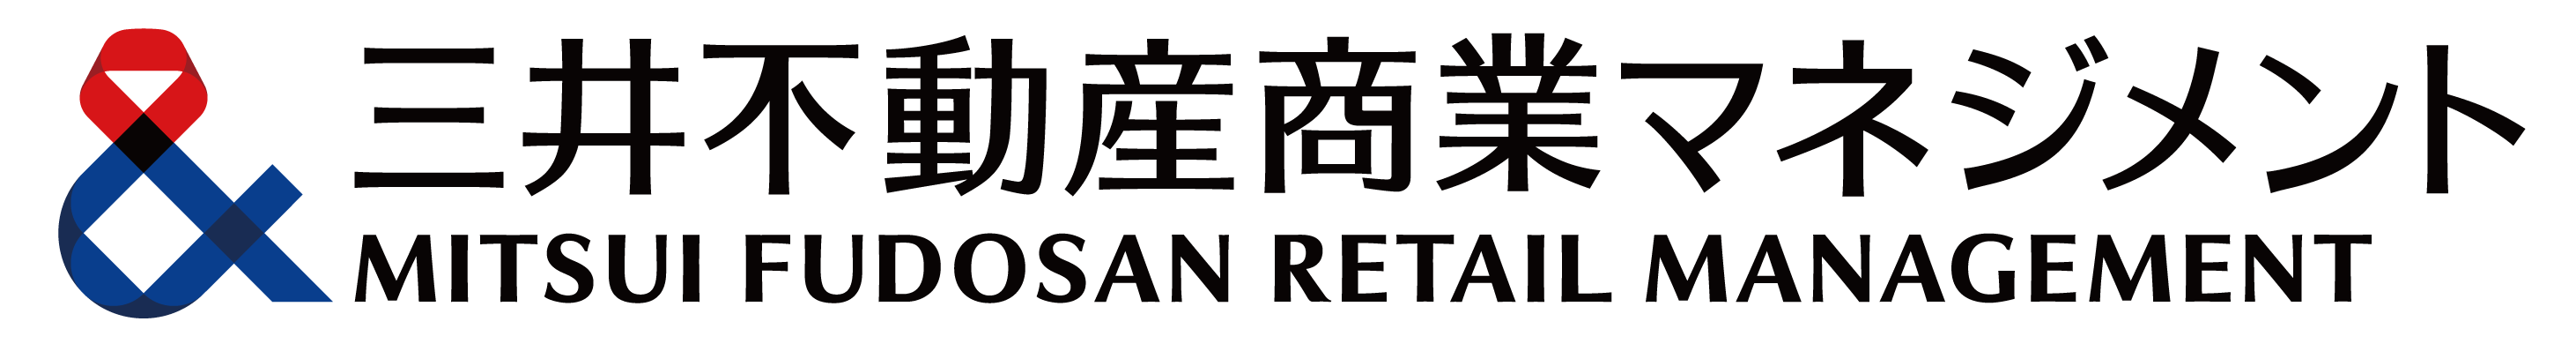 Mitsui Fudosan Retail Management